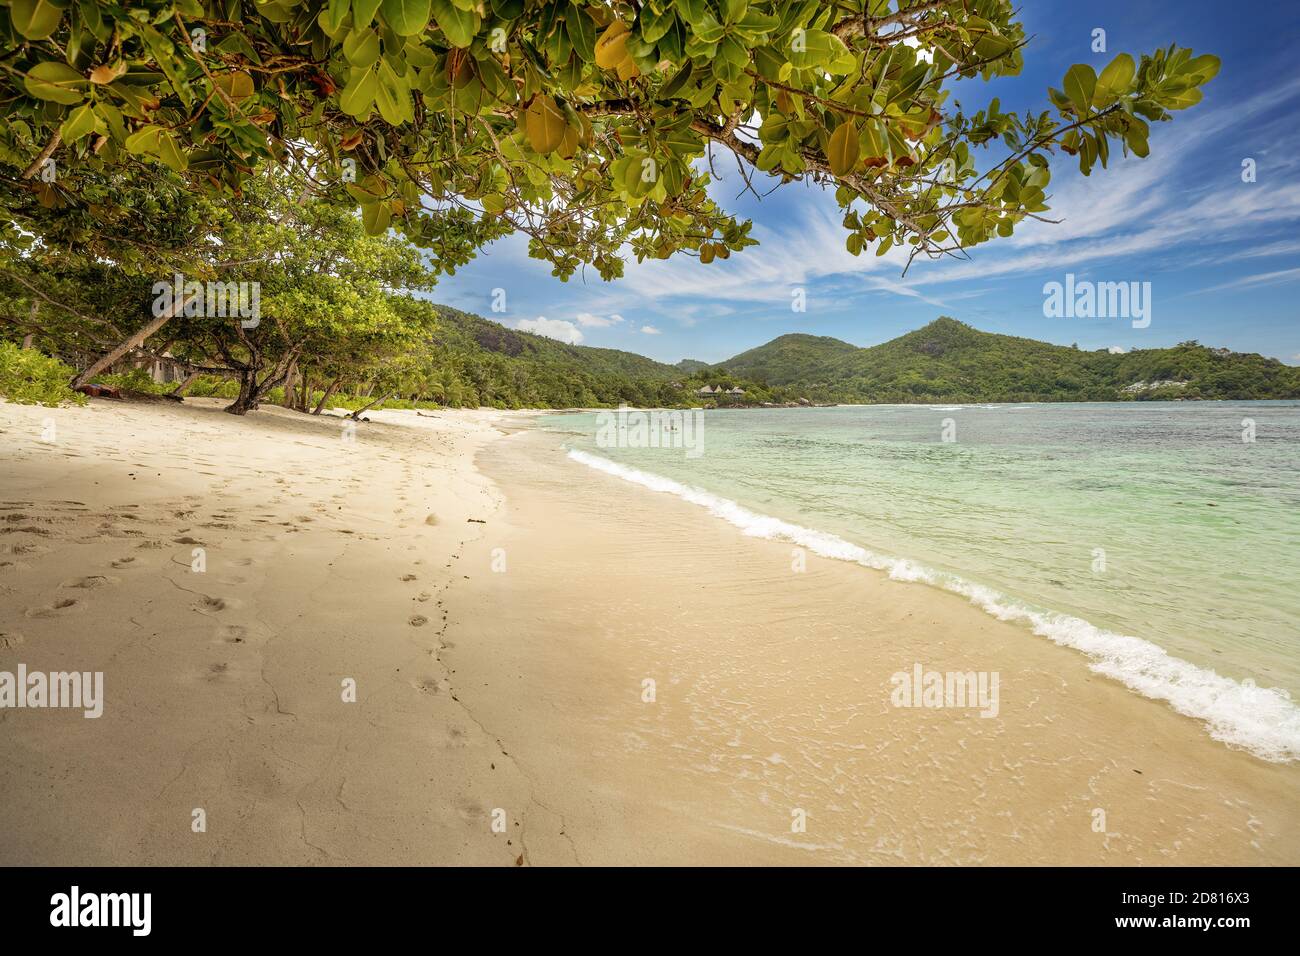 Berühmter tropischer Korallen-Sandstrand Baie Lazare, Seychellen, Mahe-Insel, Indischer Ozean. Korallenstrand Sand und üppige Vegetation. Ein himmlischer Tourist de Stockfoto